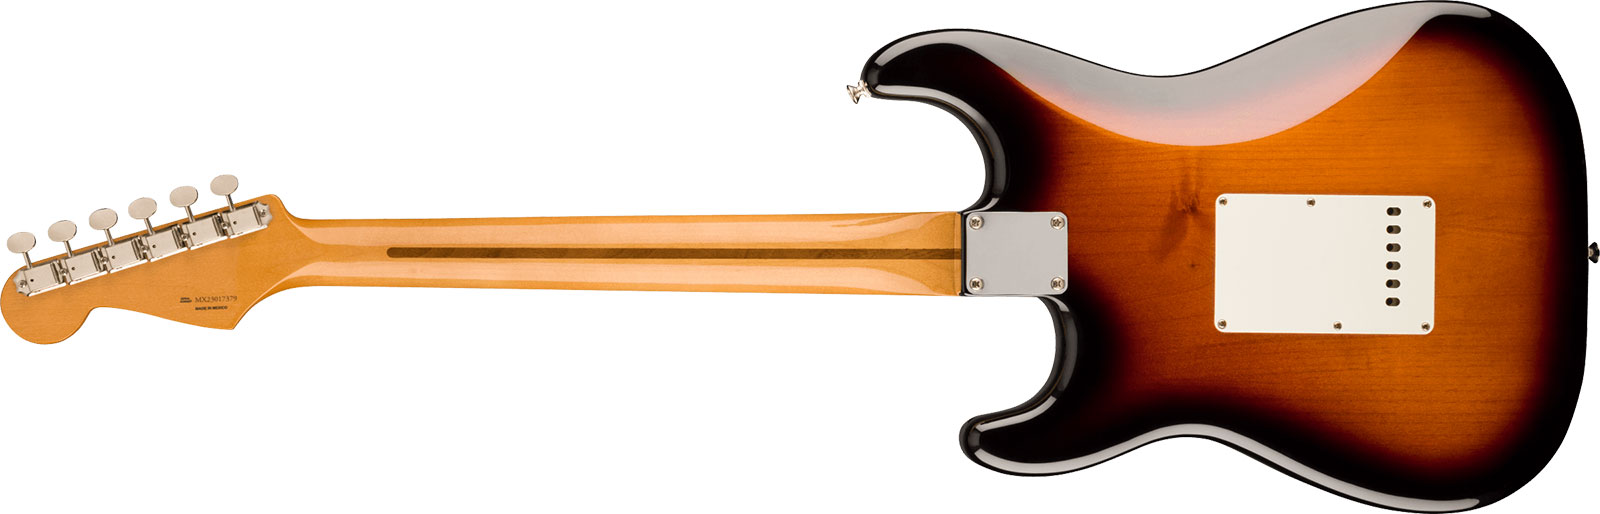 Fender Strat 50s Vintera 2 Mex 3s Trem Mn - 2-color Sunburst - Str shape electric guitar - Variation 1